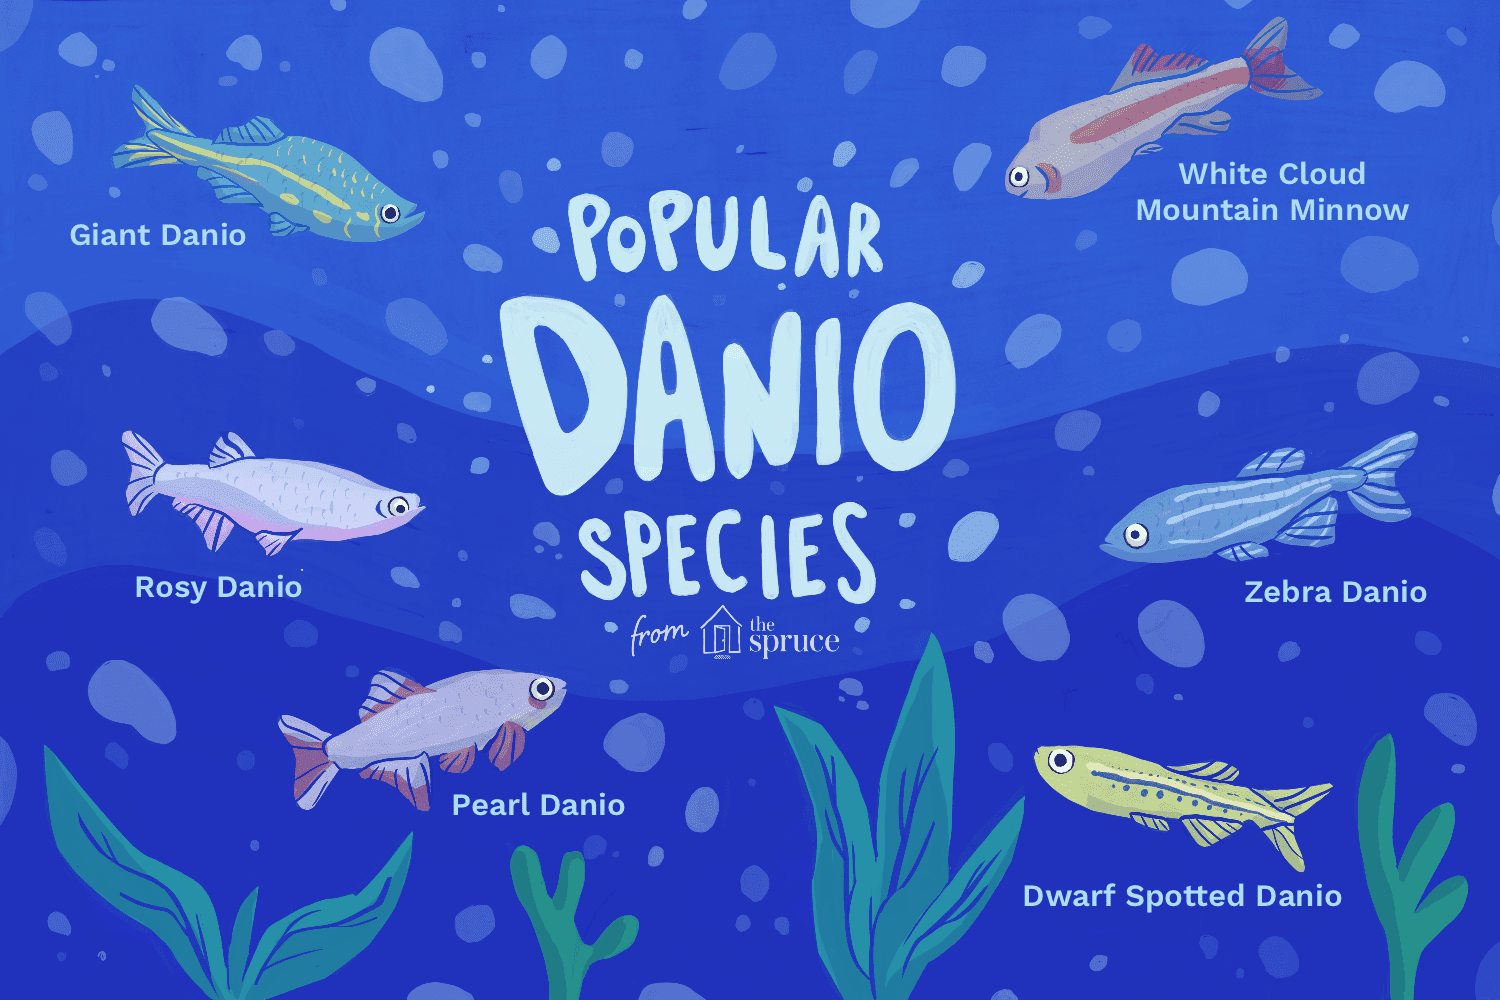 Illustration of popular Danio species